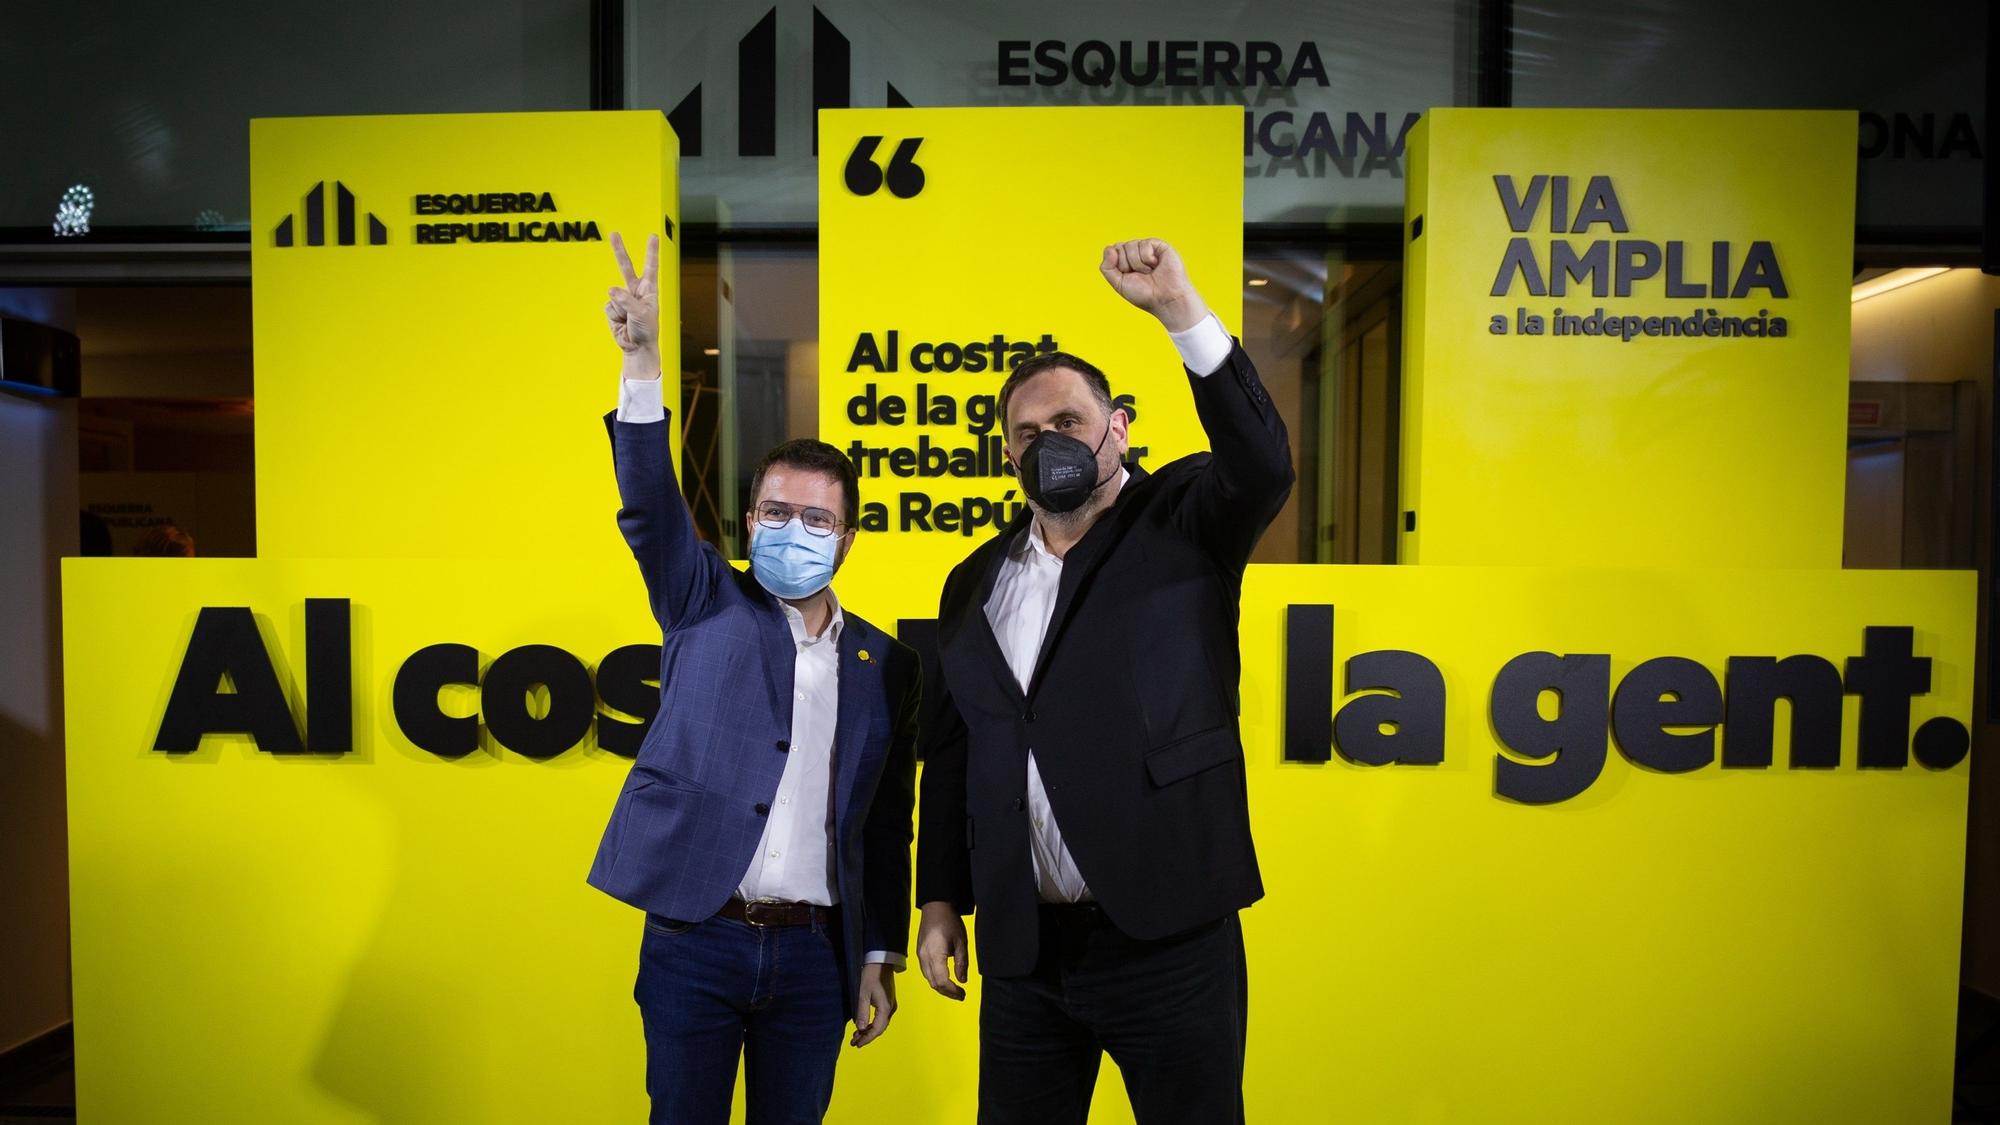 El president de la Generalitat, Pere Aragonès, y el líder de ERC, Oriol Junqueras, durante un acto de los republicanos catalanes.